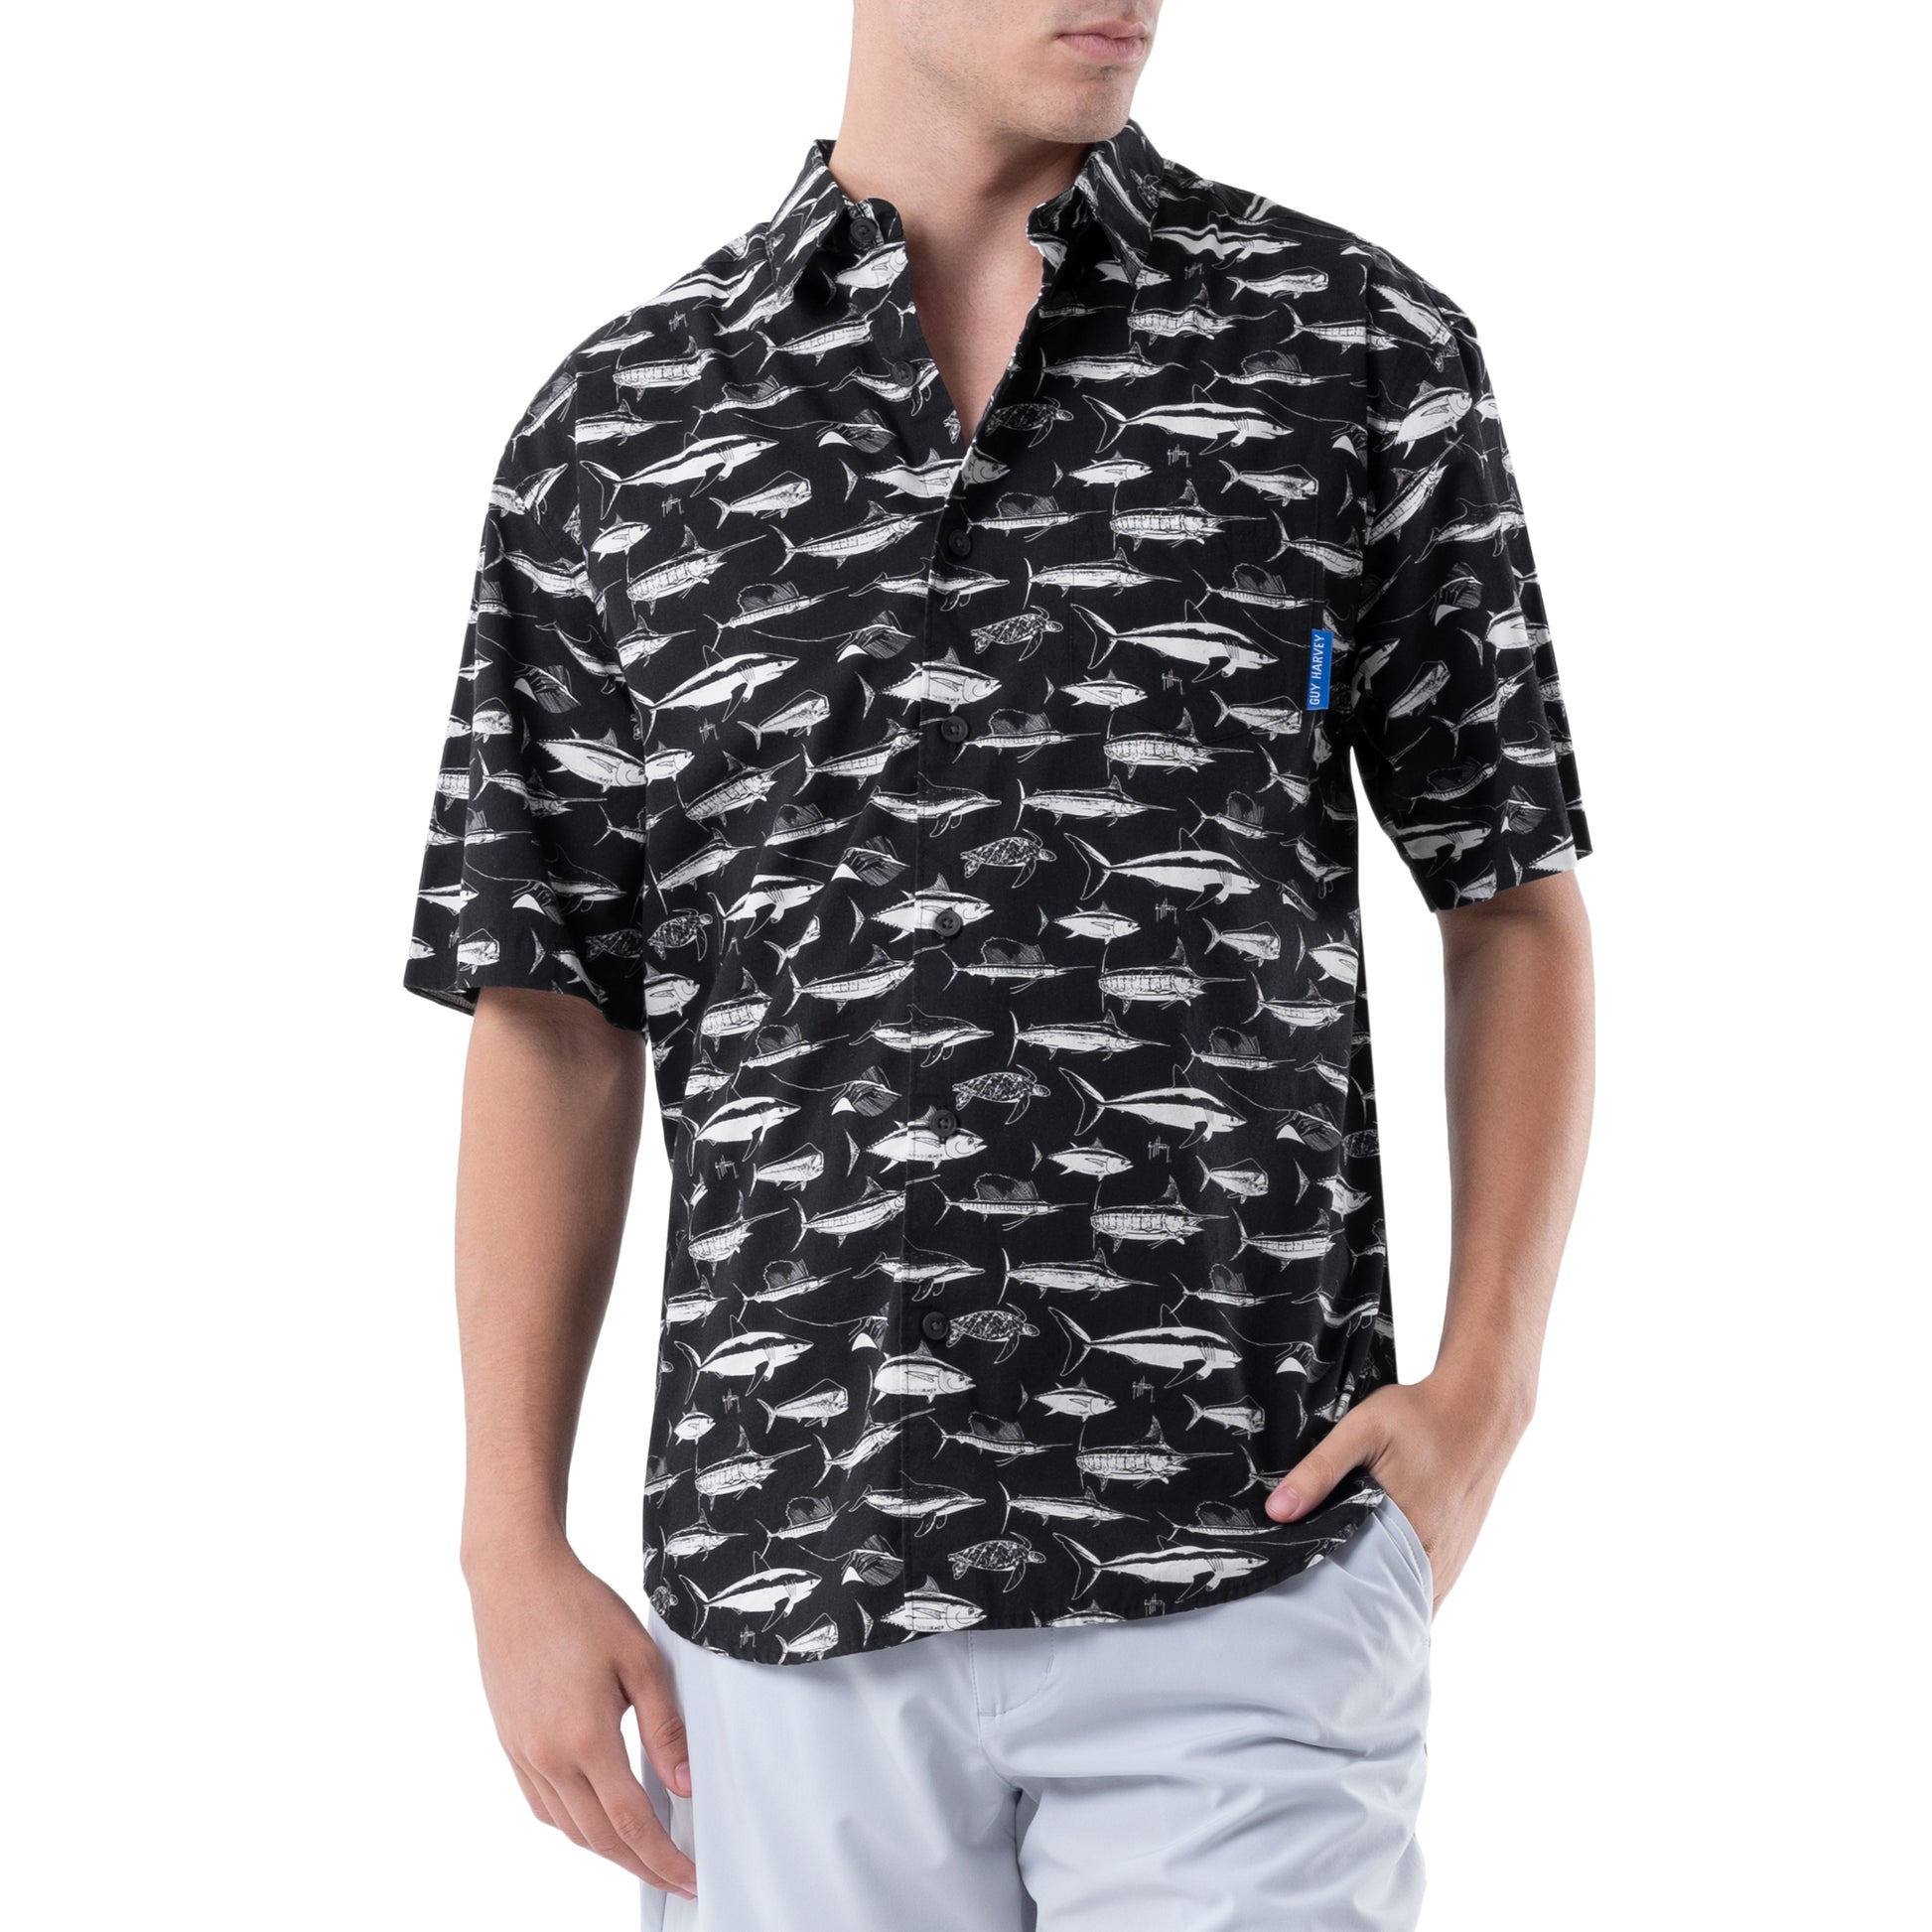  HOURVNEI Men'S Short Sleeve Fishing Dress Shirt Button